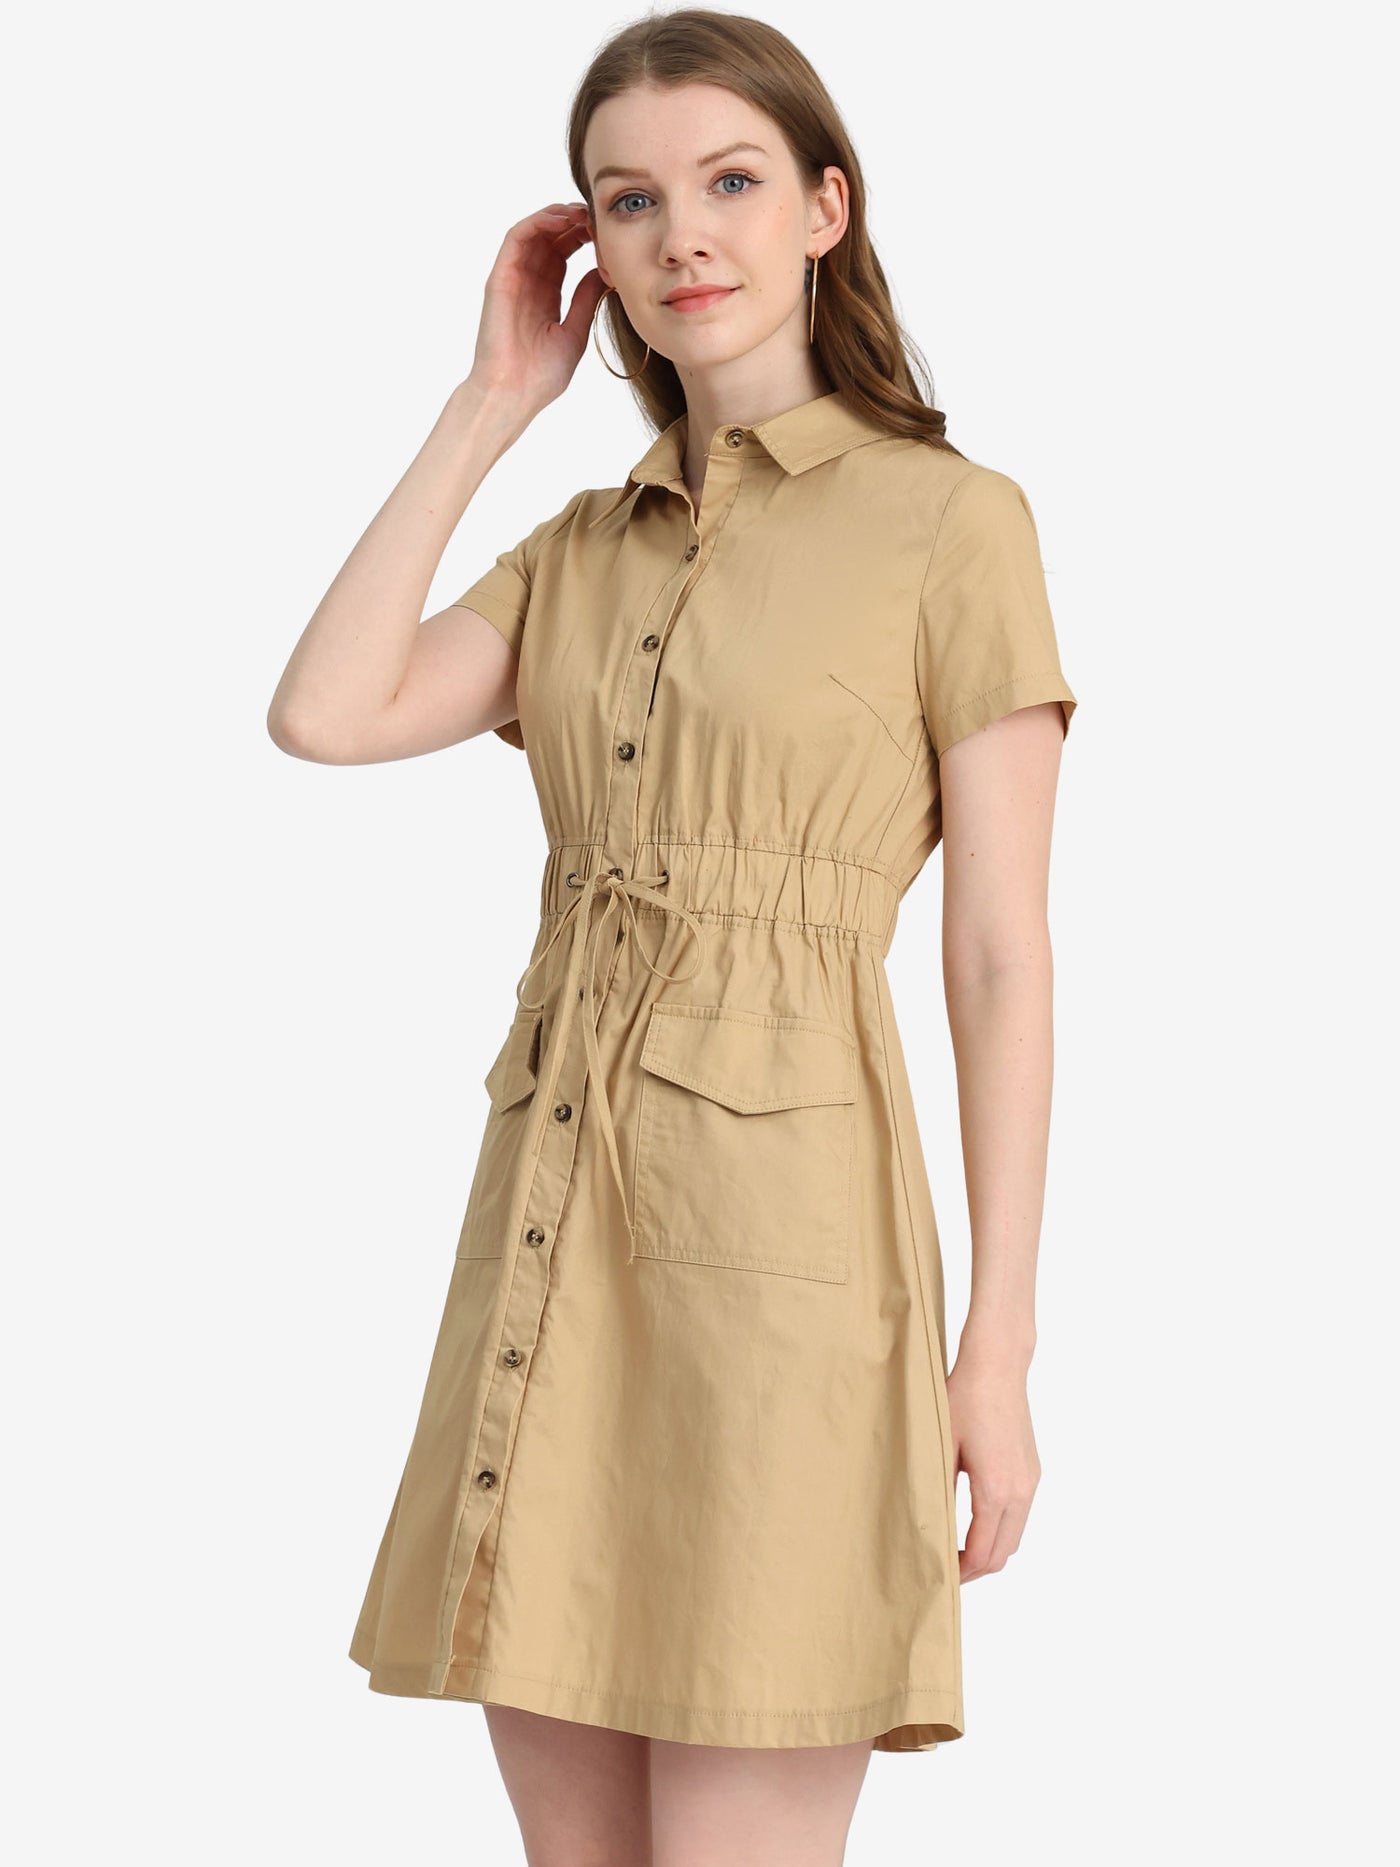 Allegra K Summer Safari Dress Cotton Button Down Collar Shirtdress